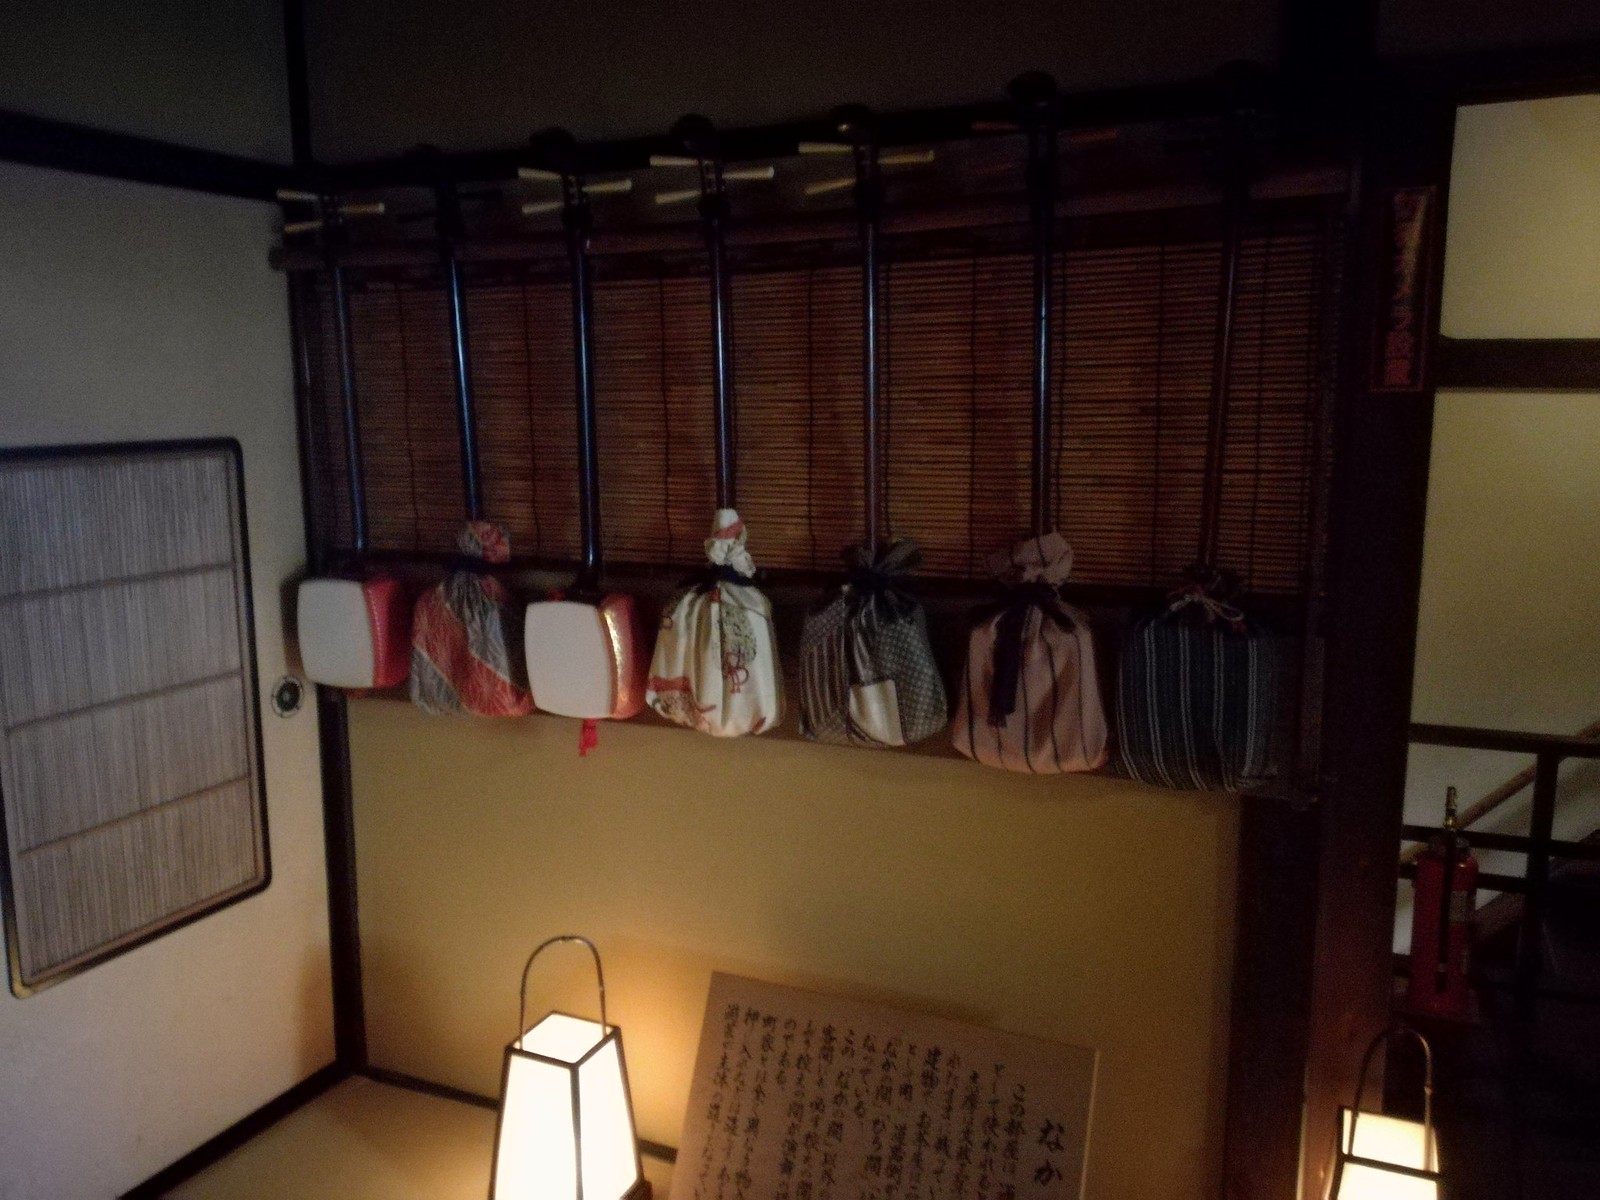 Kanazawa - Shima, maison de geishas - shamisen